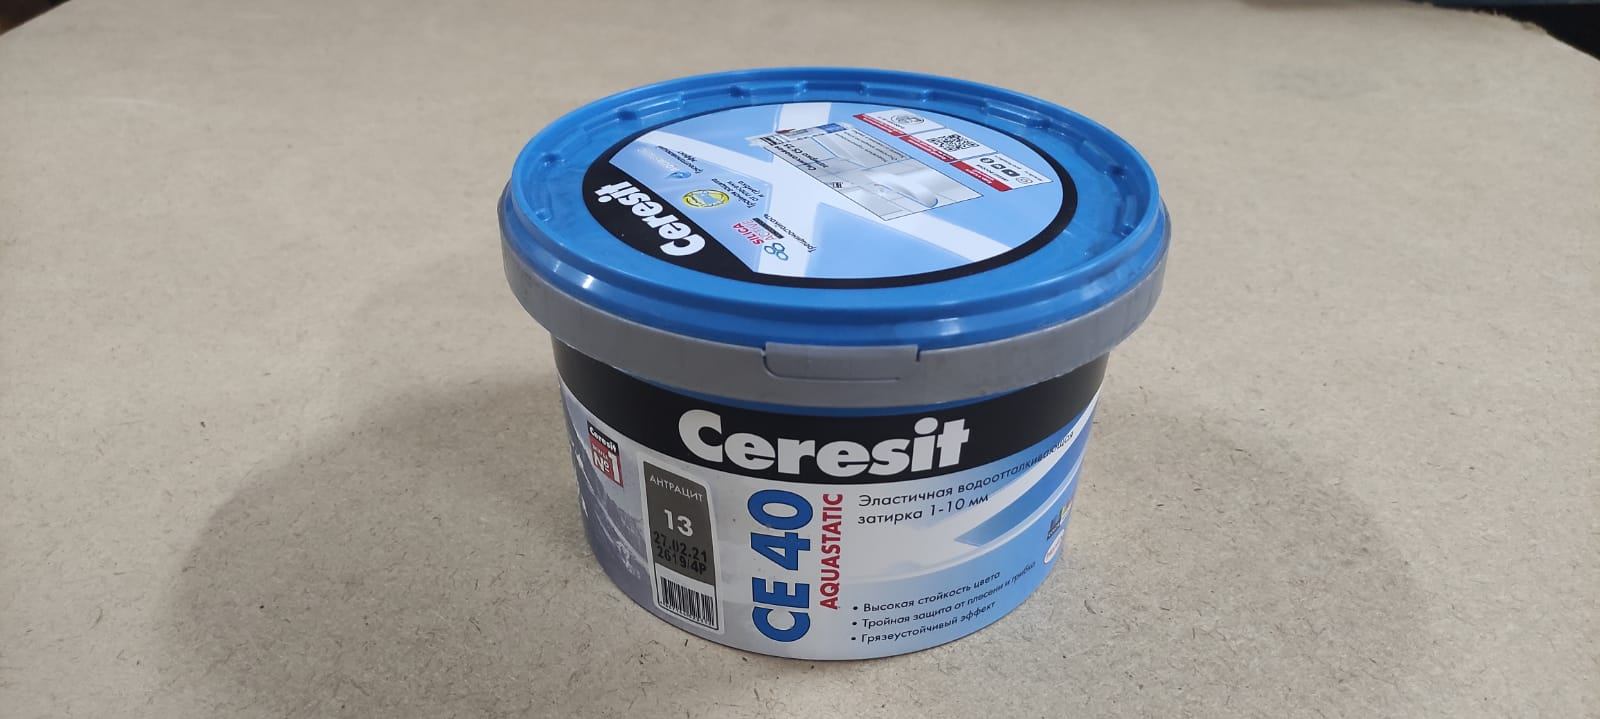 Эластичная водоотталкивающая затирка Ceresit CE 40 aquastatic 2 кг (цвет: антрацит)